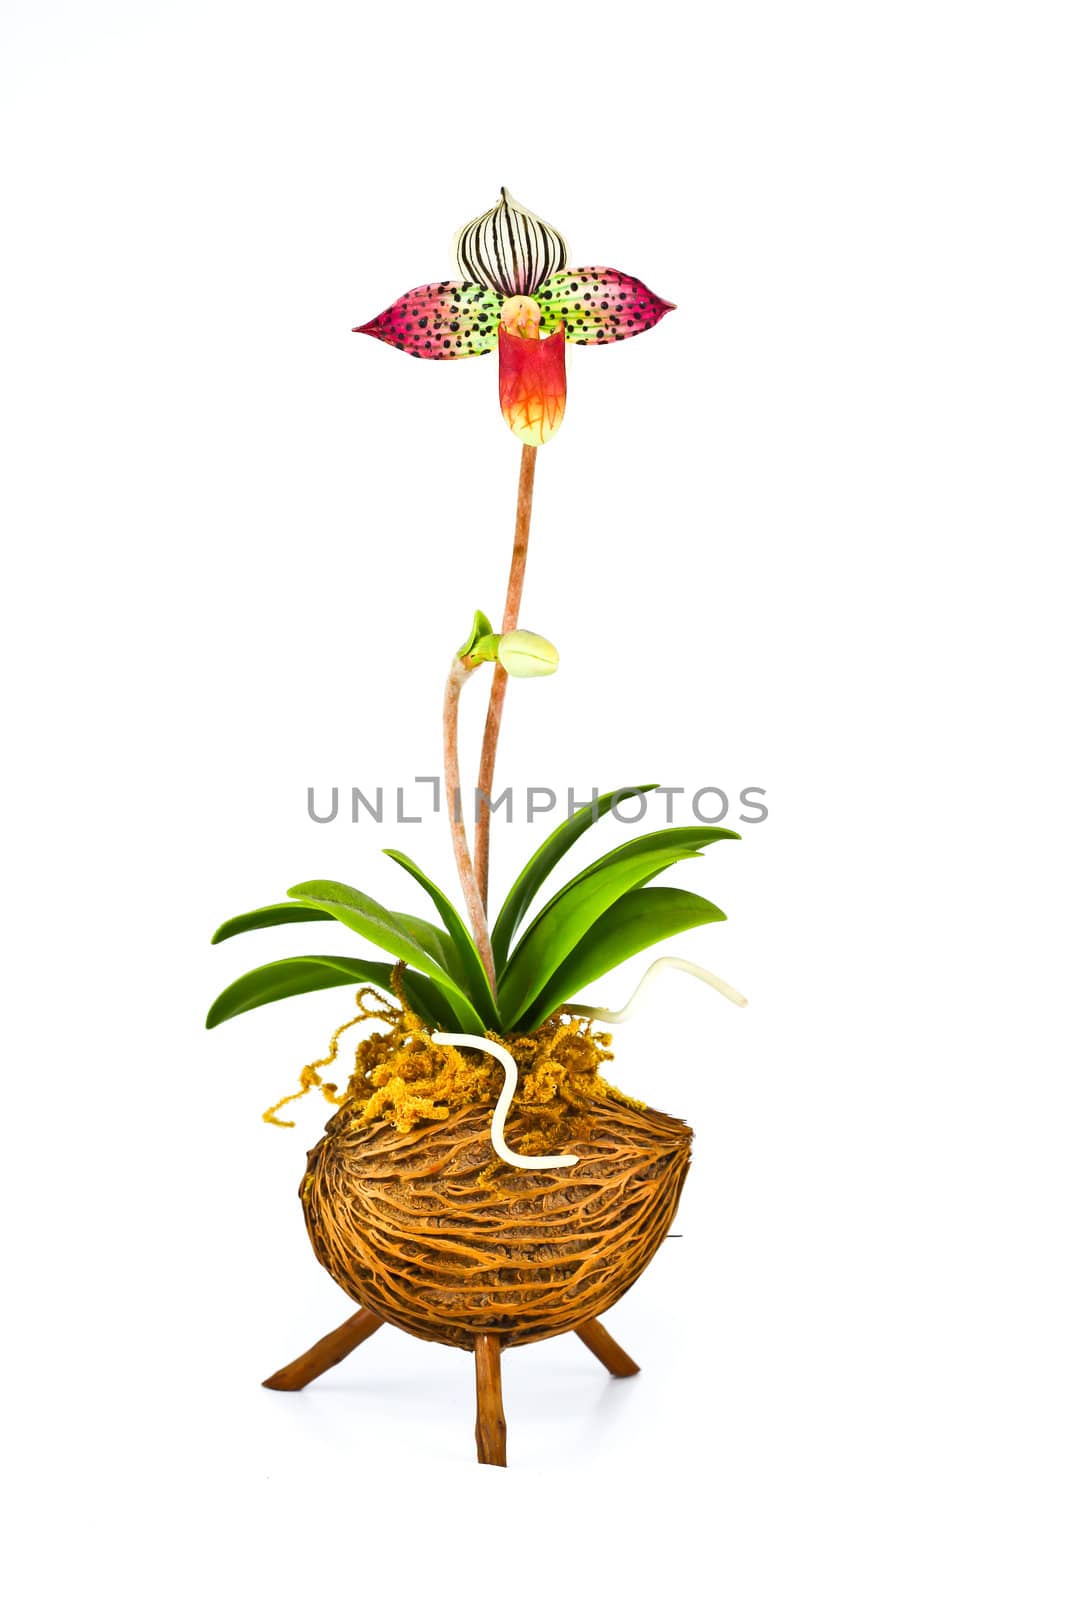 Orchid flower by bajita111122